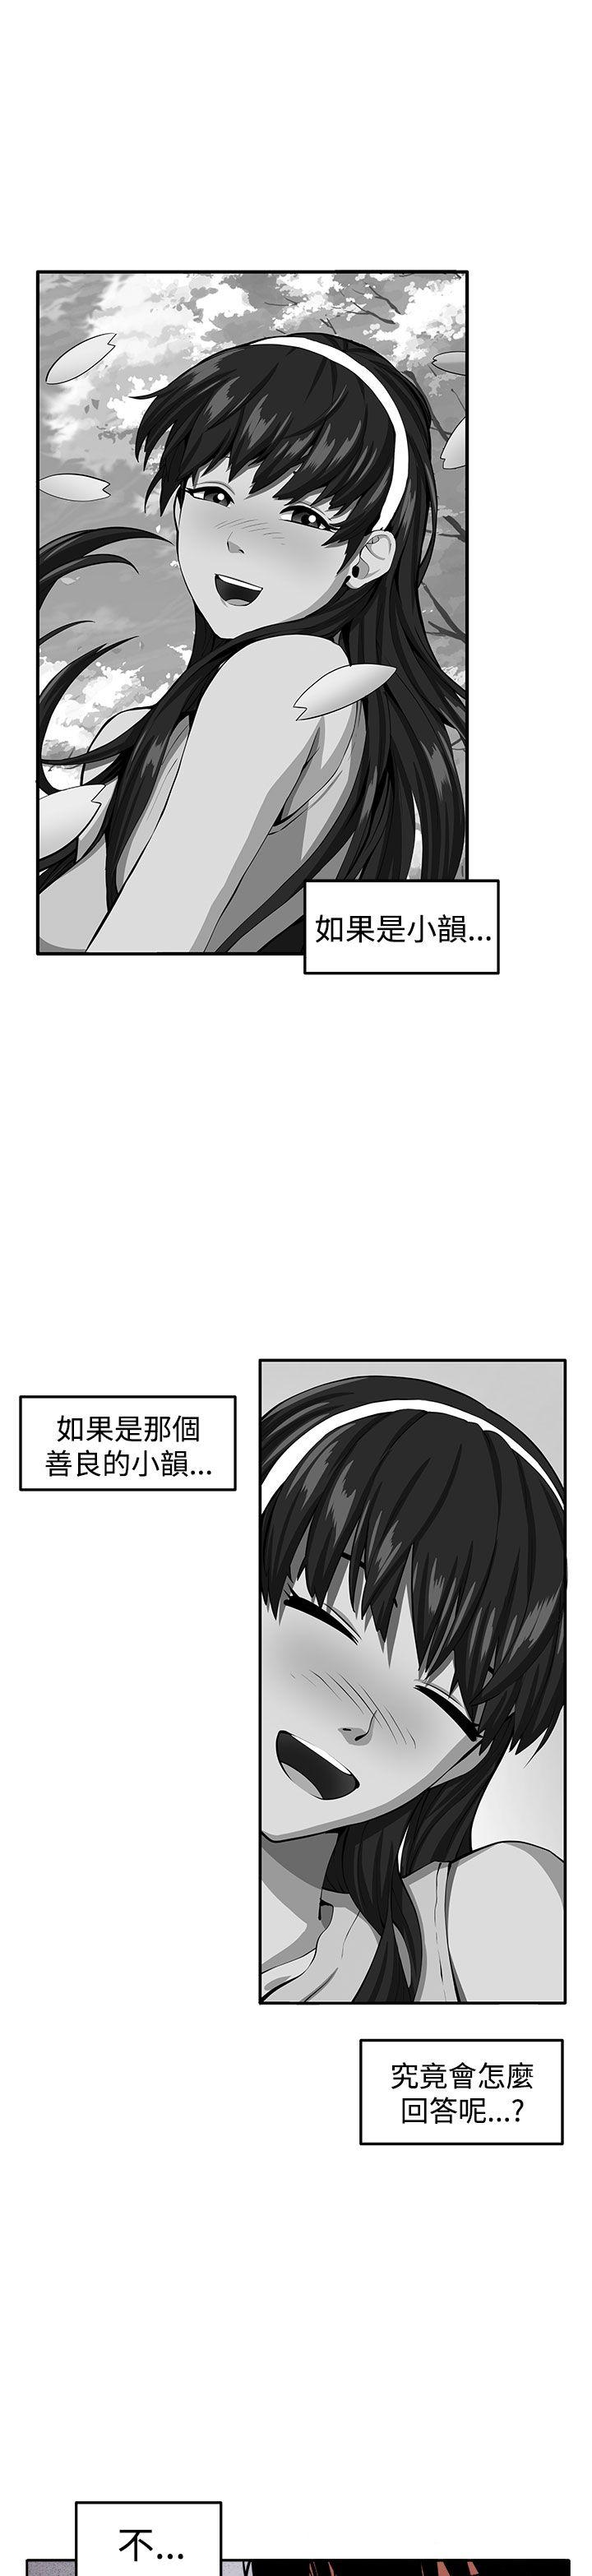 圈套  最终话 漫画图片1.jpg